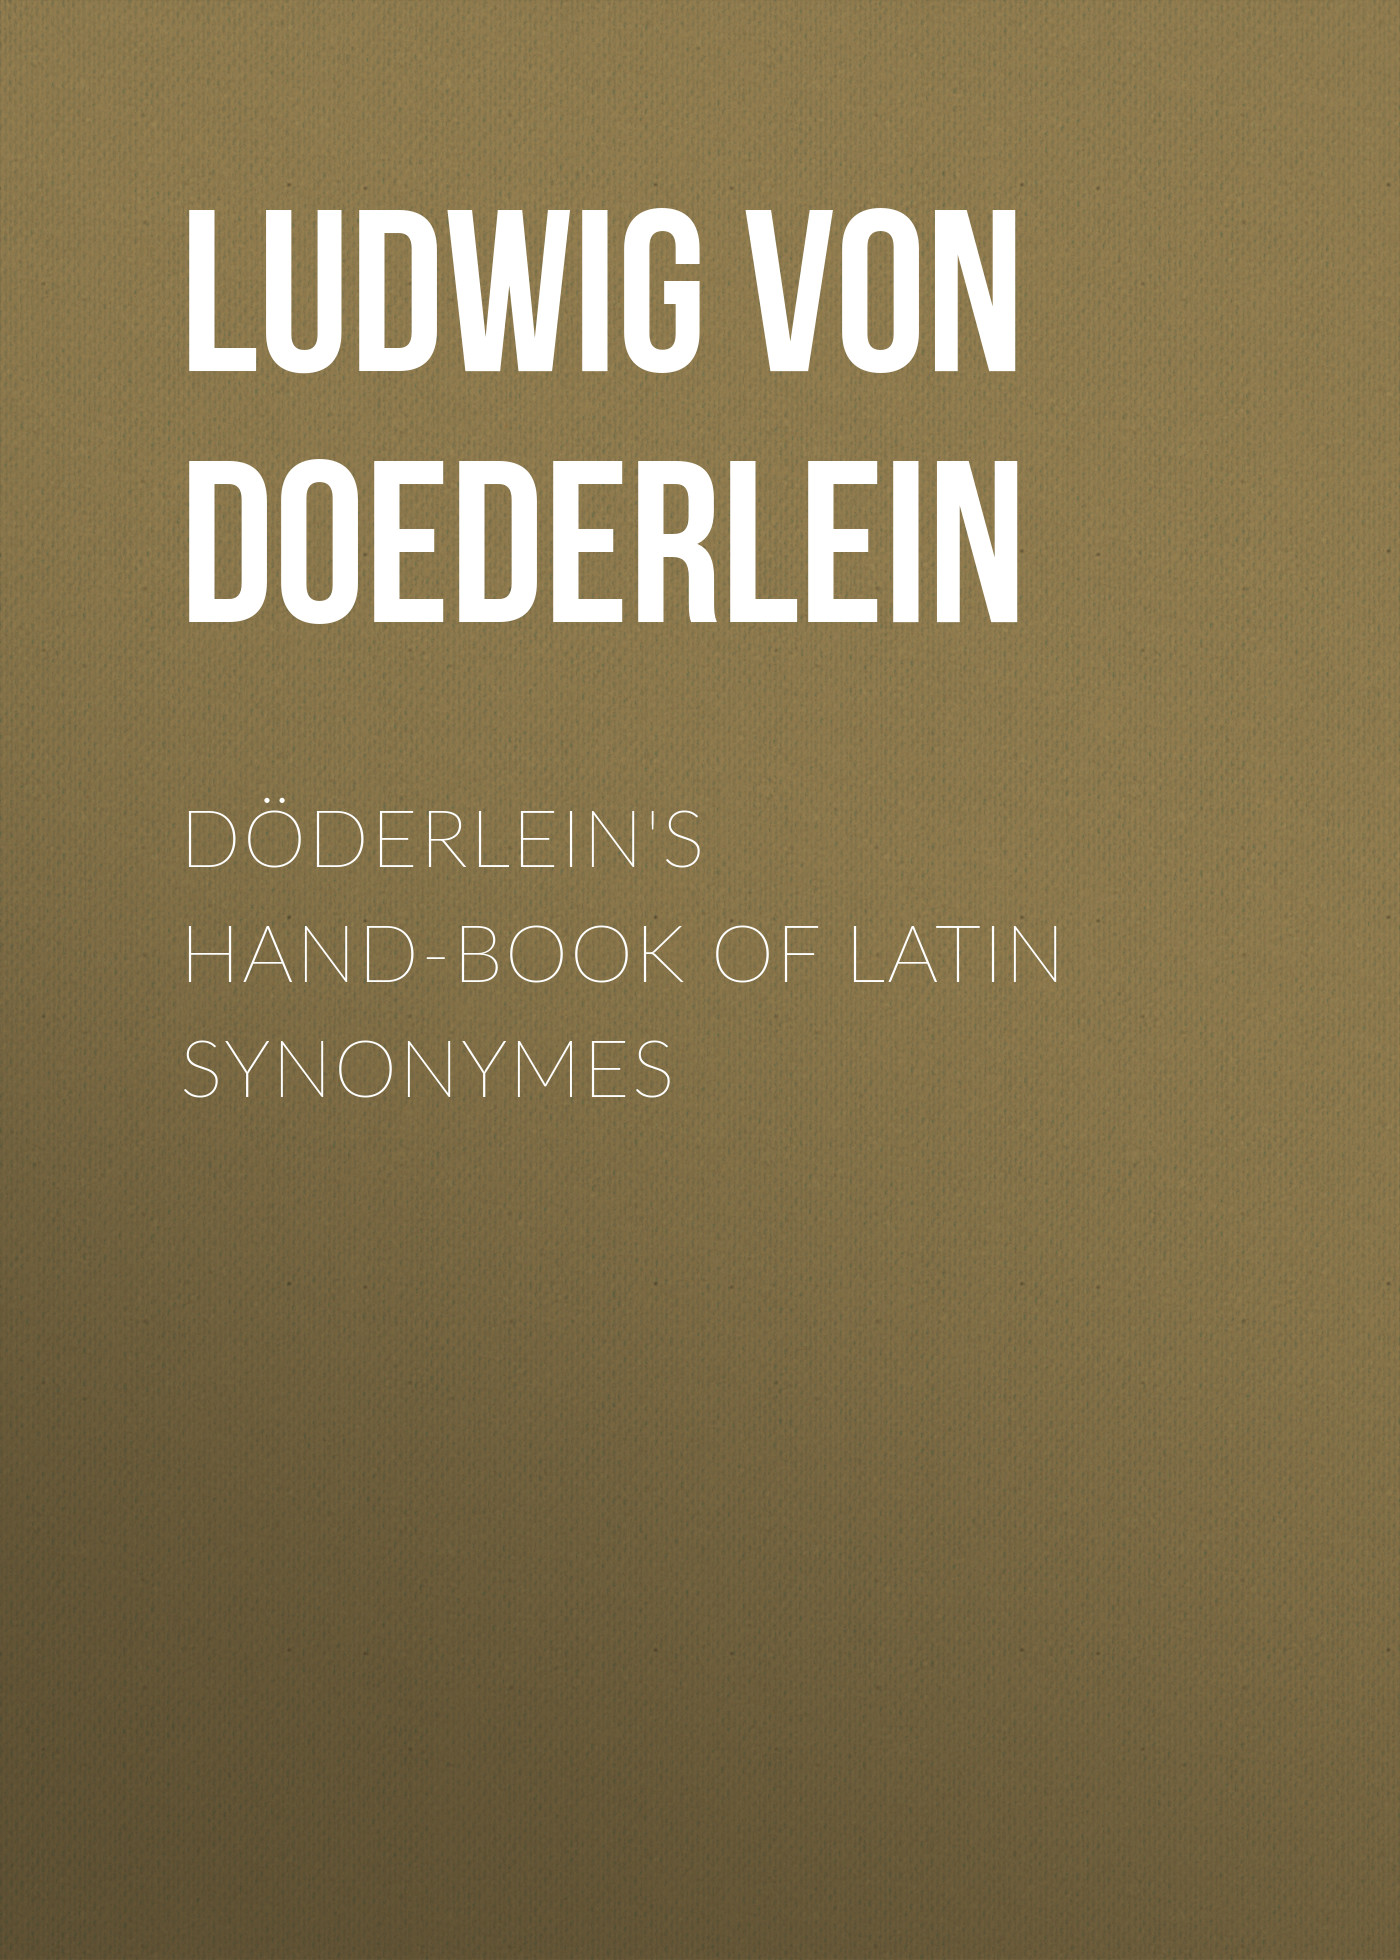 Книга Döderlein's Hand-book of Latin Synonymes из серии , созданная Ludwig Doederlein, может относится к жанру Языкознание, Зарубежная старинная литература, Зарубежная классика. Стоимость электронной книги Döderlein's Hand-book of Latin Synonymes с идентификатором 24619325 составляет 0 руб.